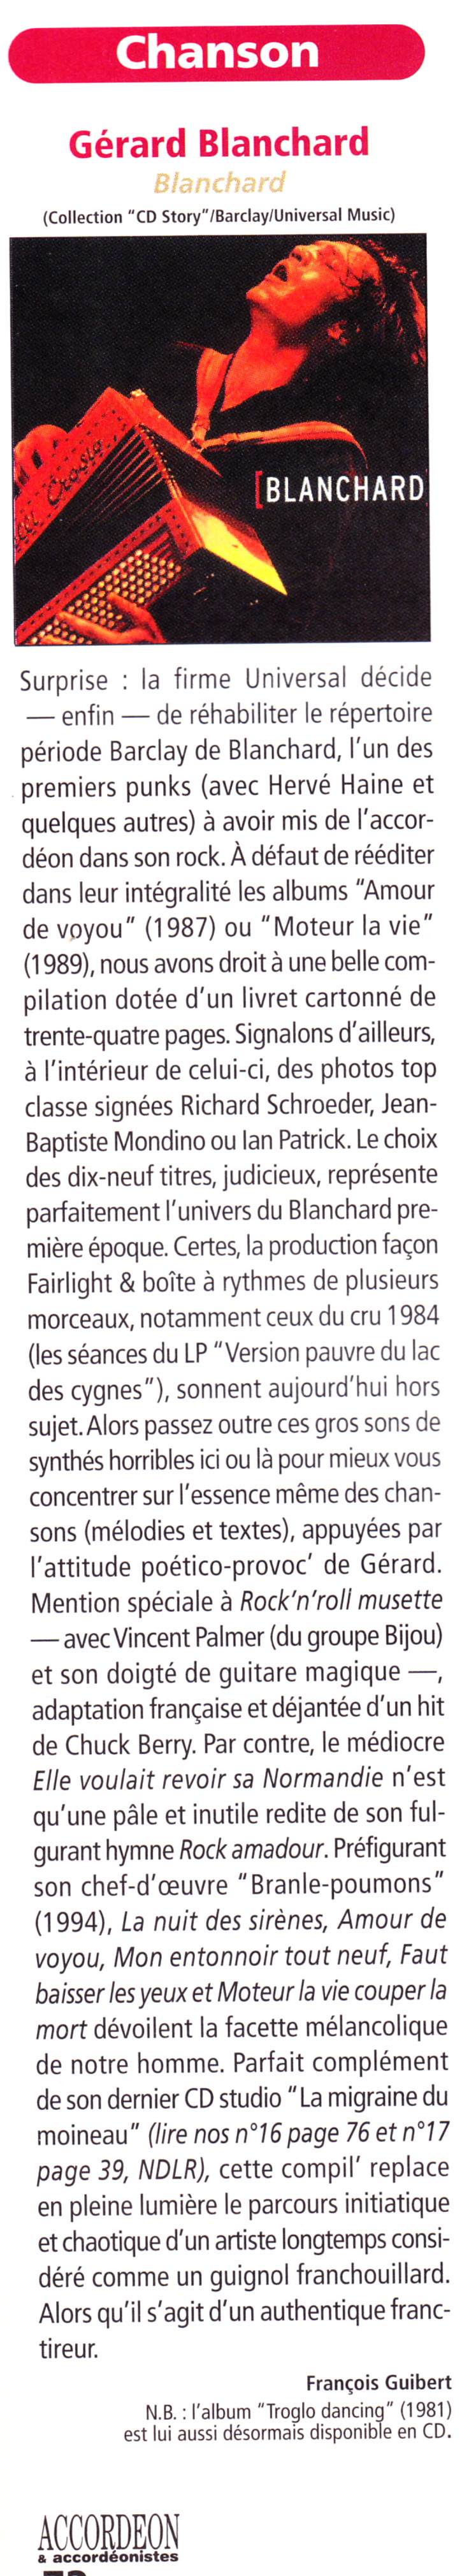 GÉRARD BLANCHARD en solo 24/06/2013 Théâtre du Petit St-Martin (Paris) : compte rendu 13080409322115789311438578